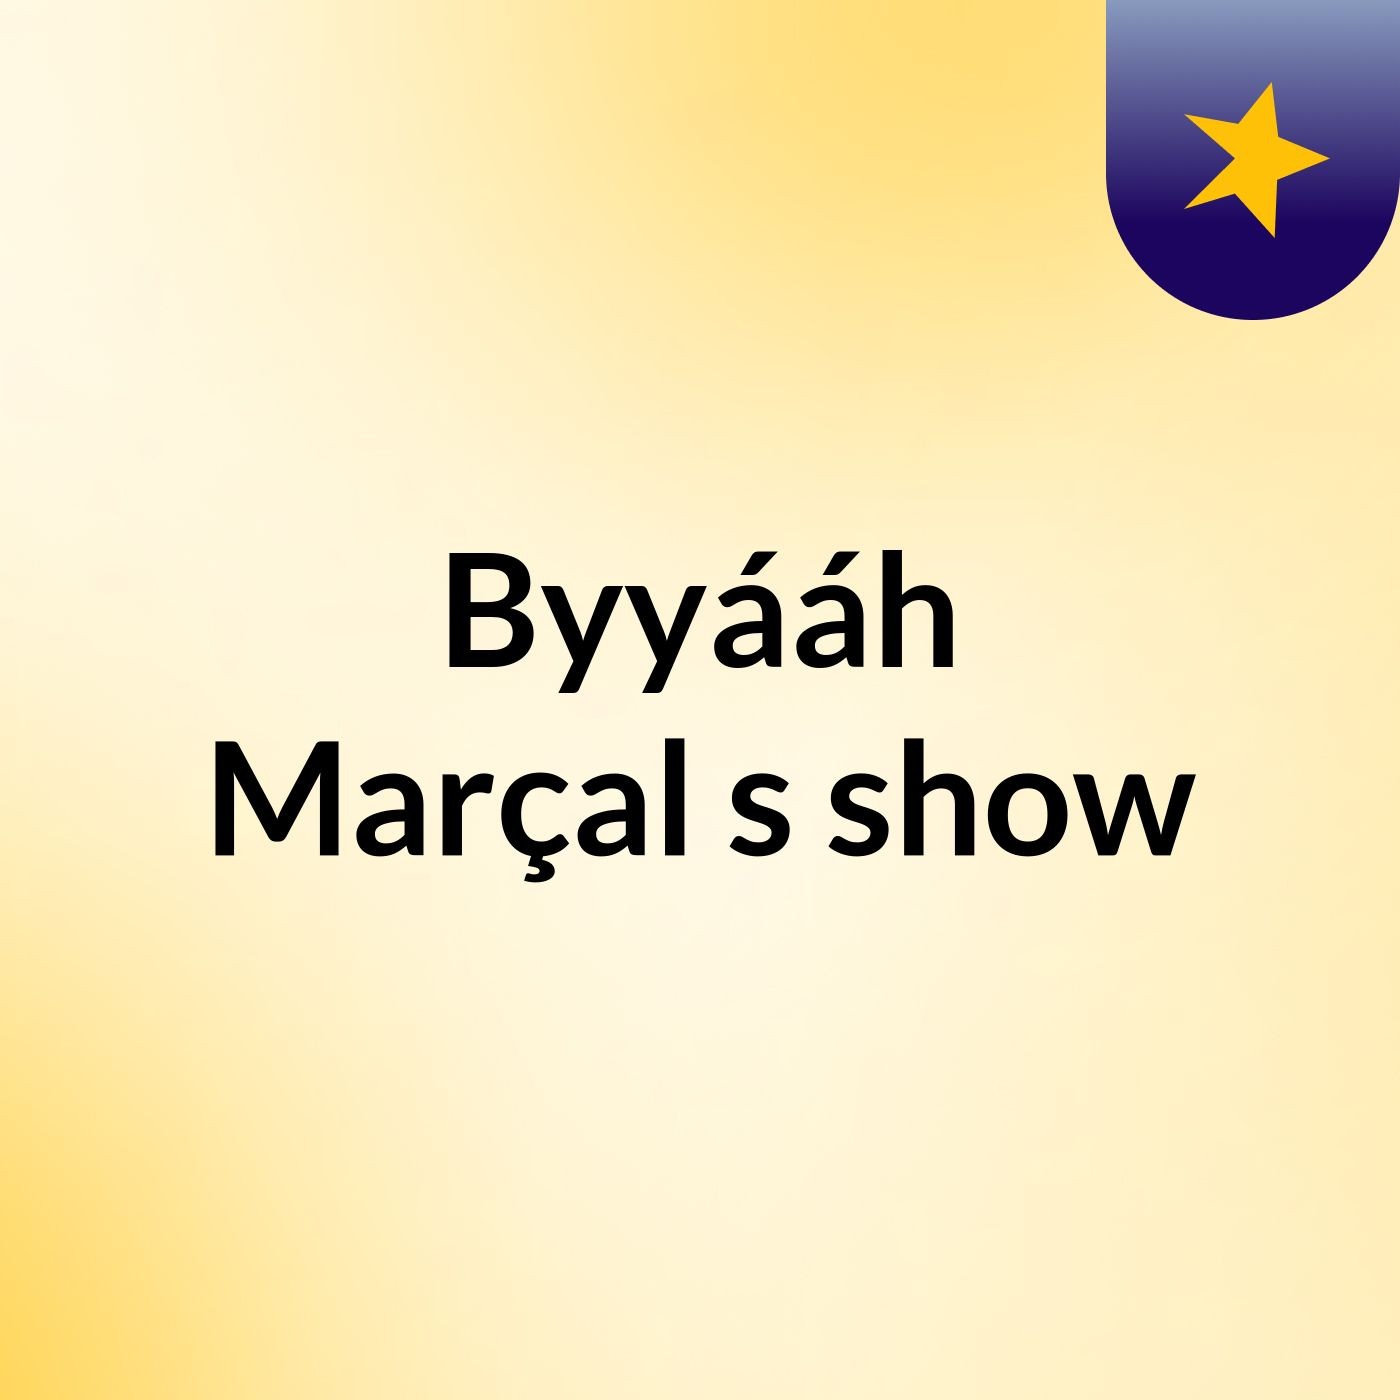 Byyááh Marçal's show